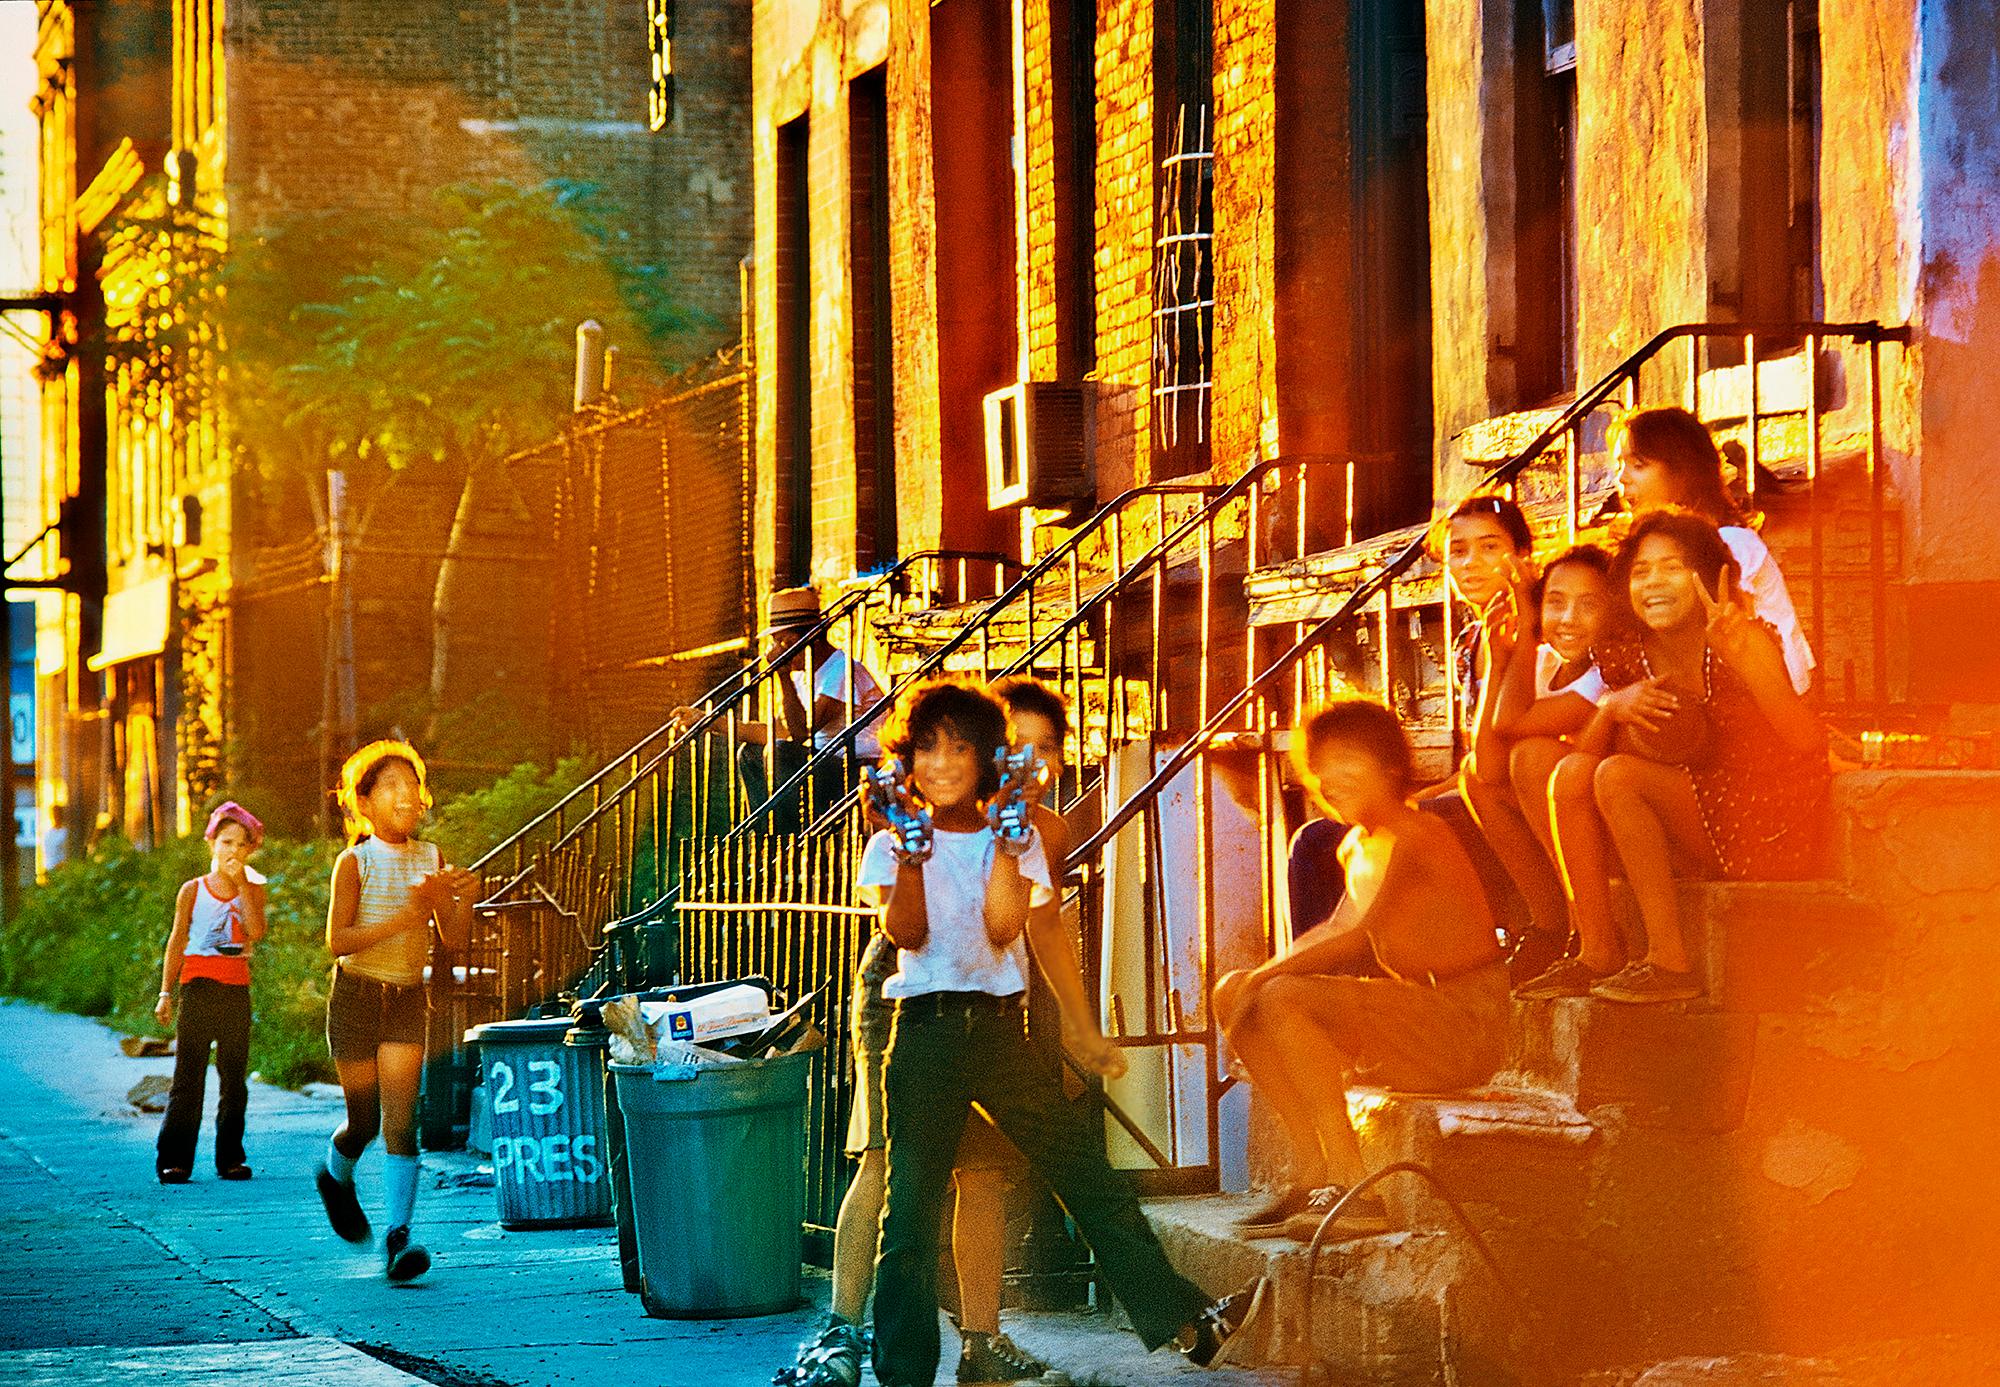 ighborhood Kids on Stoop in Red Hood, Brooklyn  Vintage Brooklyn – Vintage 